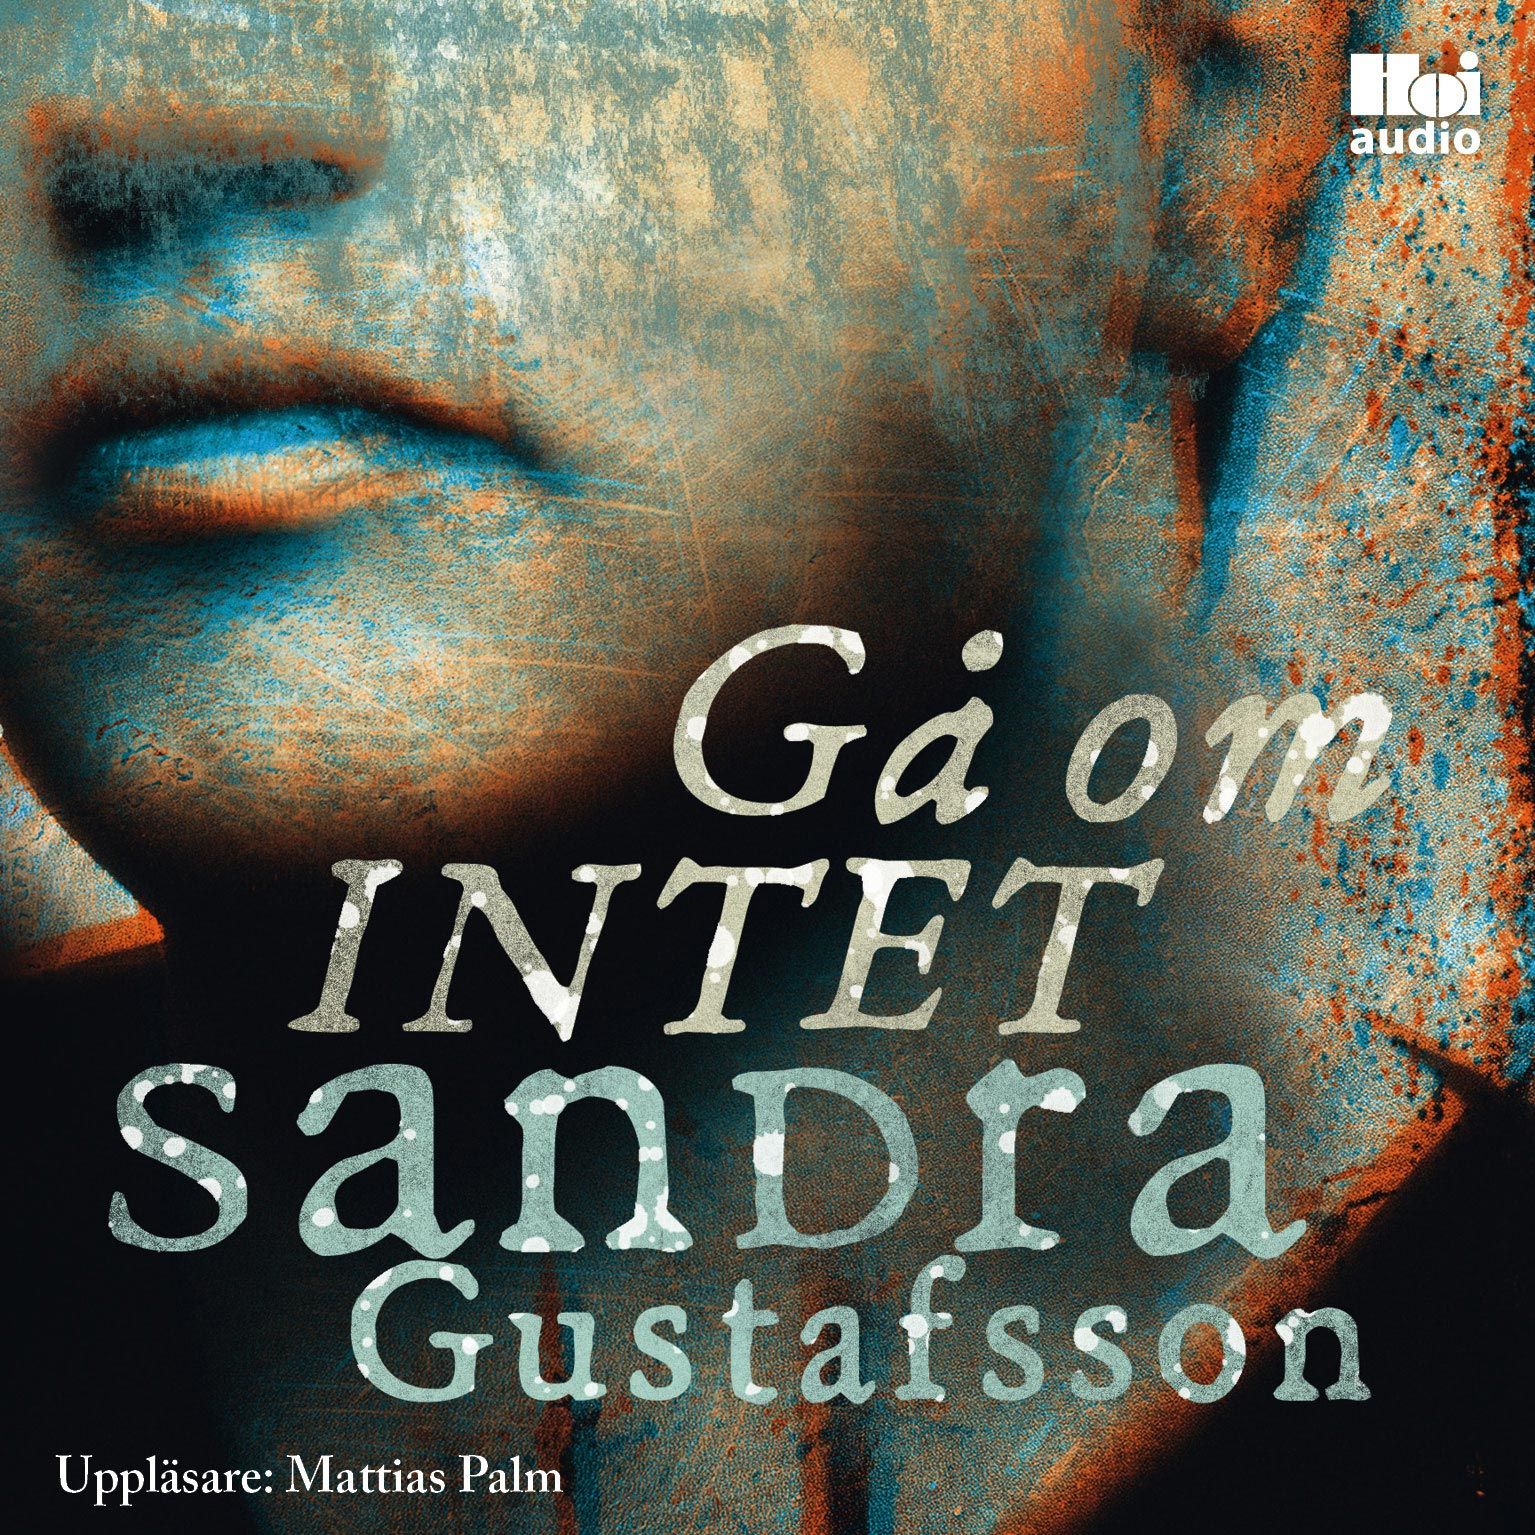 Gå om intet, ljudbok av Sandra Gustafsson